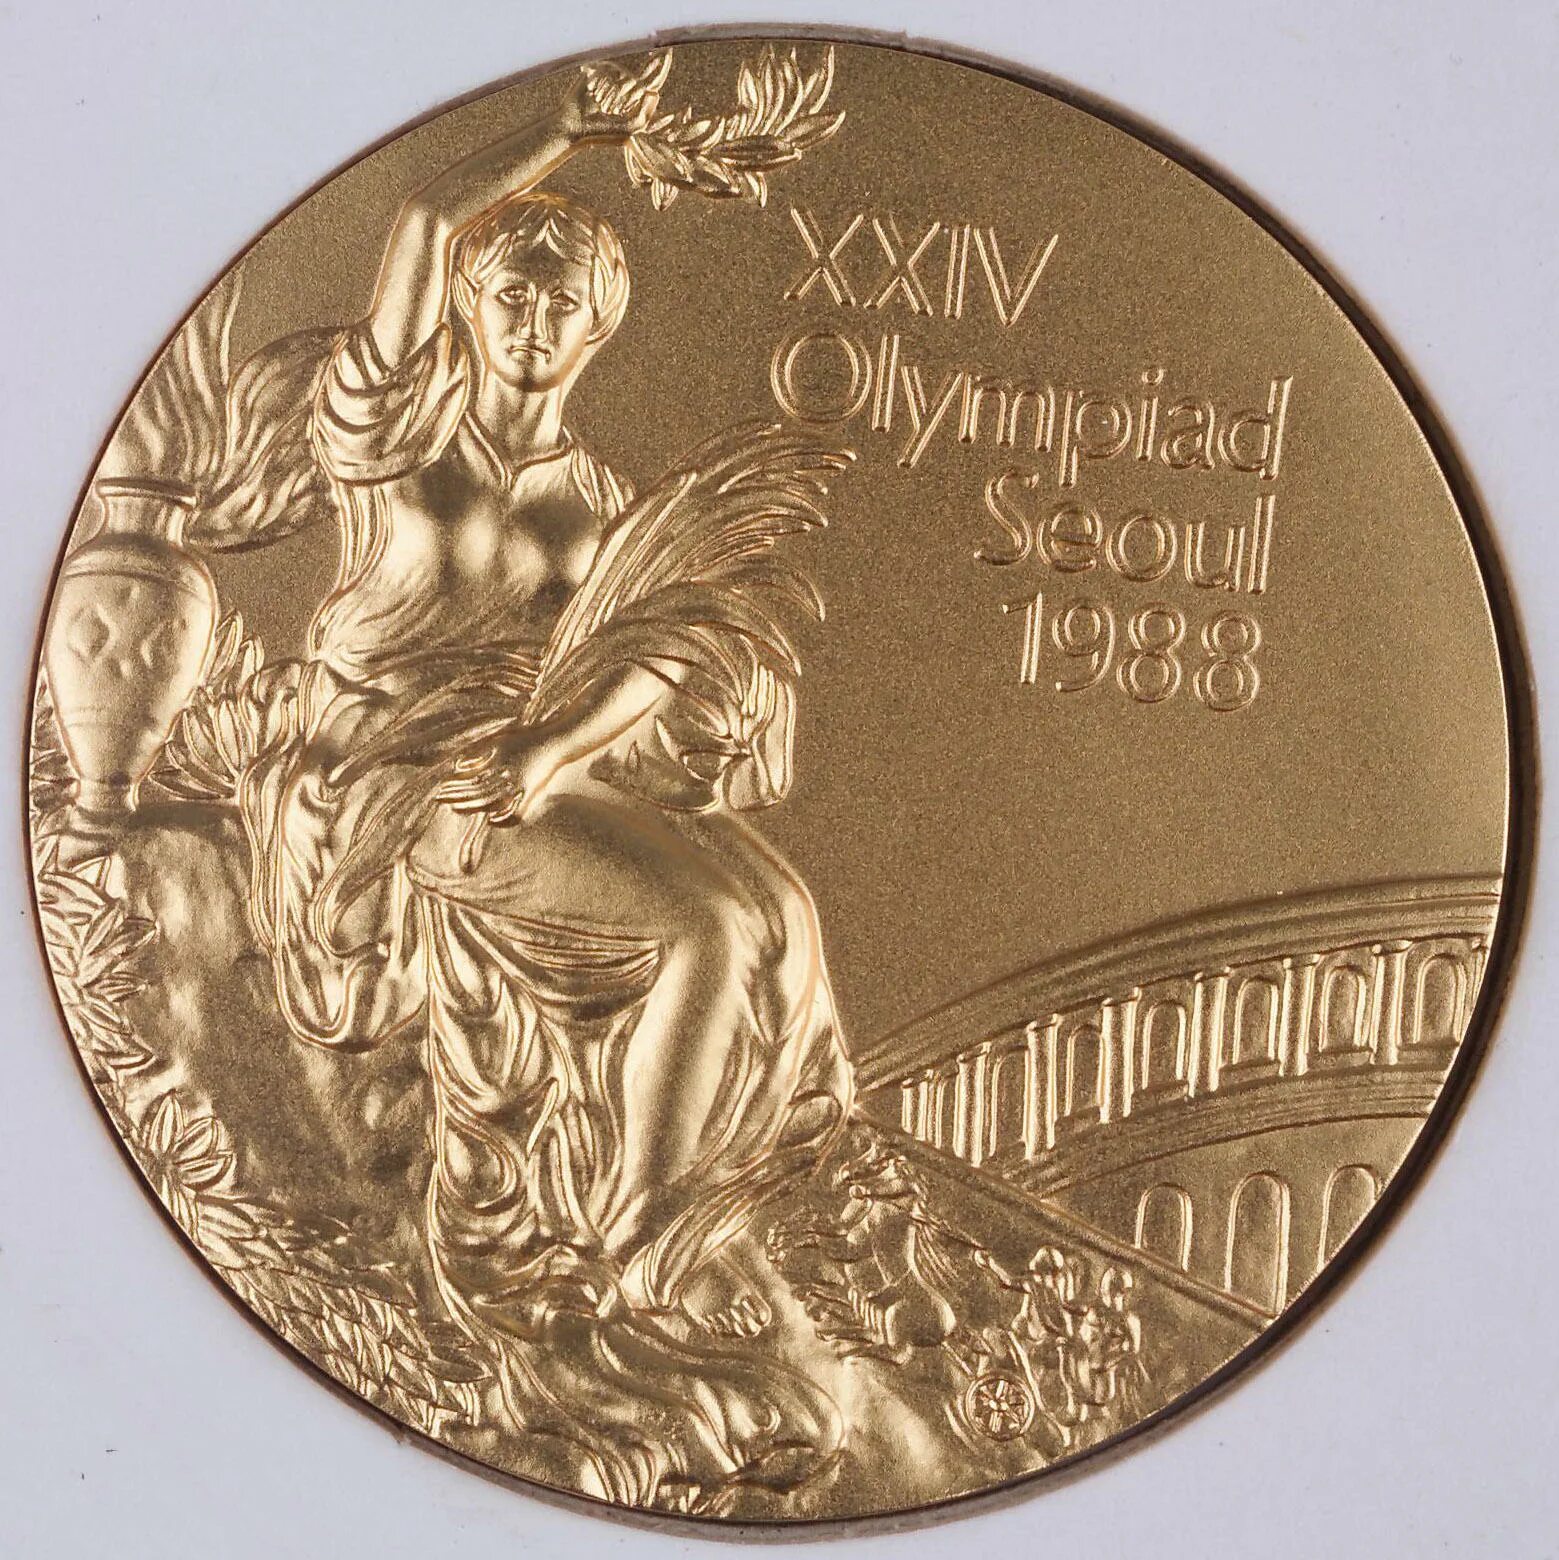 Золотые Олимпийские медали Сеул 1988. Олимпийская медаль Сеул 1988. Медаль олимпиады Сеул 1988 года.